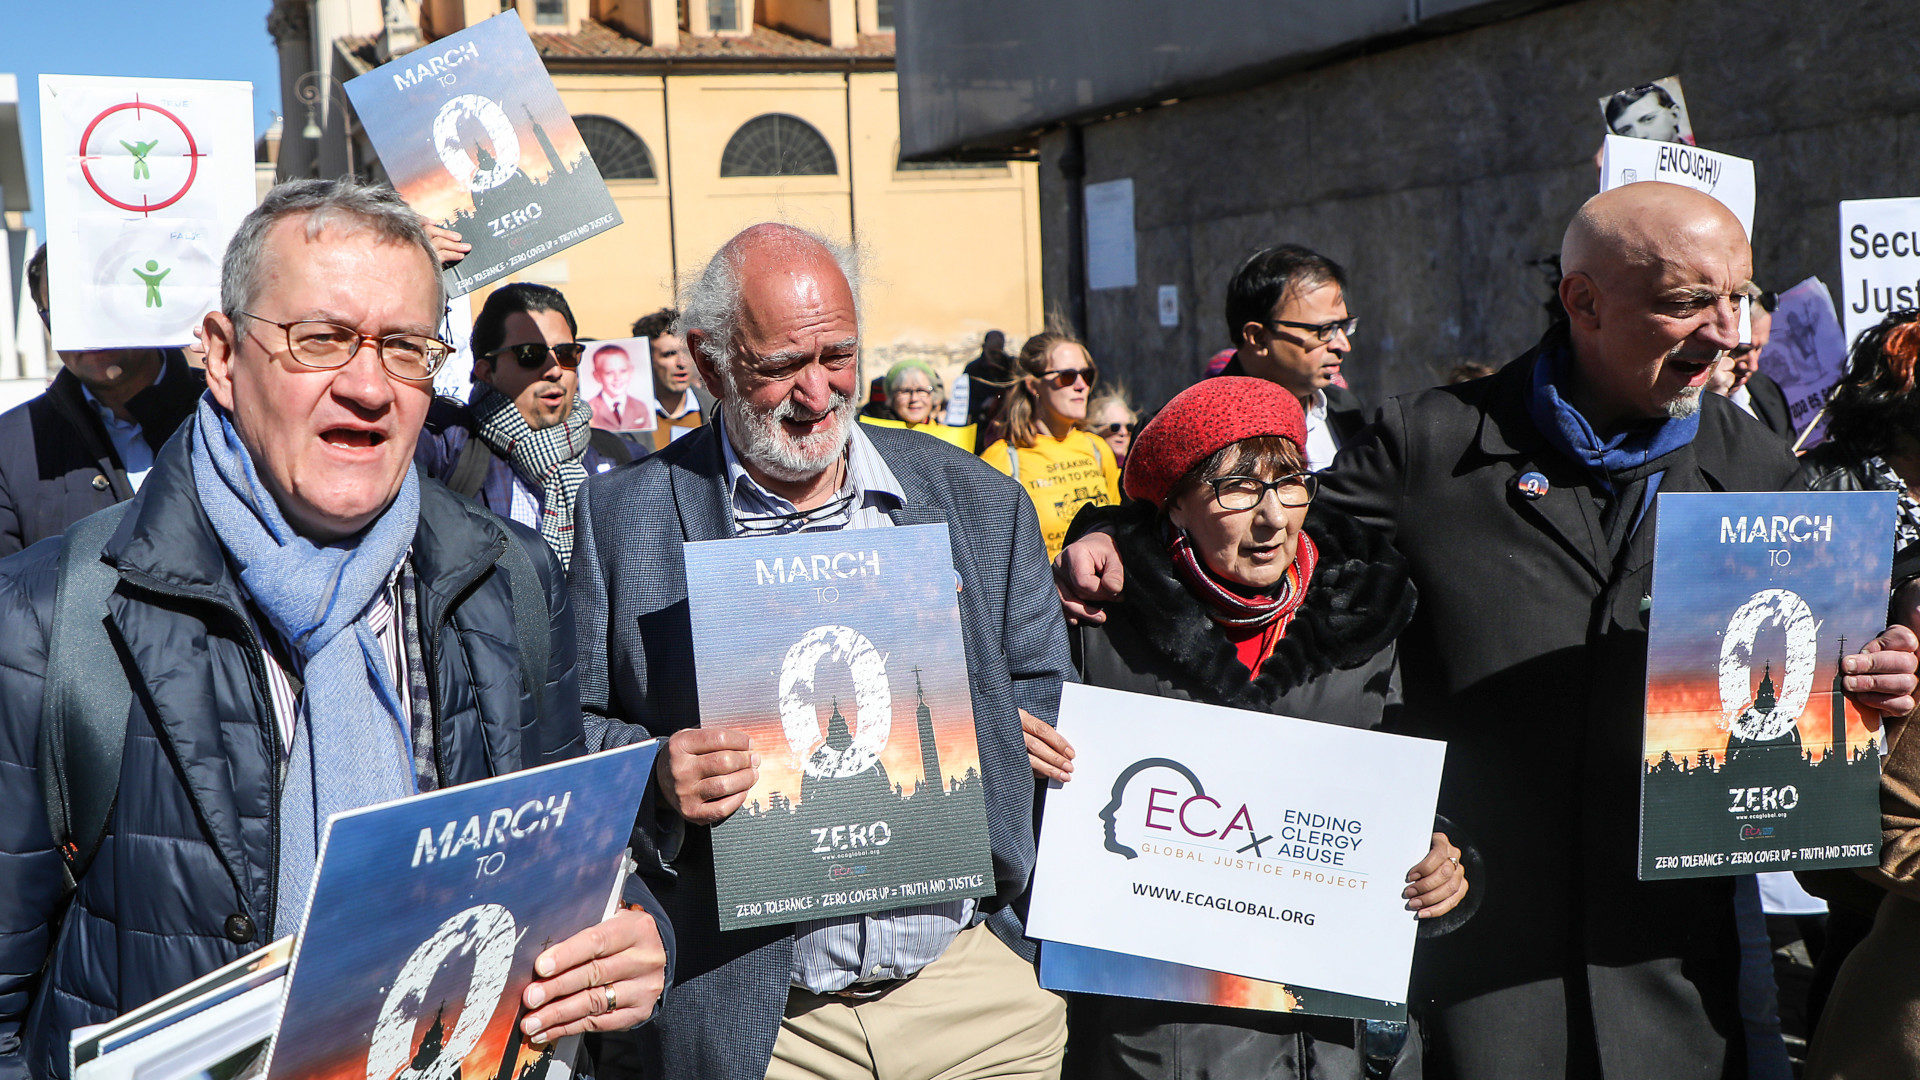 Matthias Katsch (l.) in der Demo der Opferorganisation "Ending Clergy Abuse" (ECA) in Rom, 23. Februar 2019